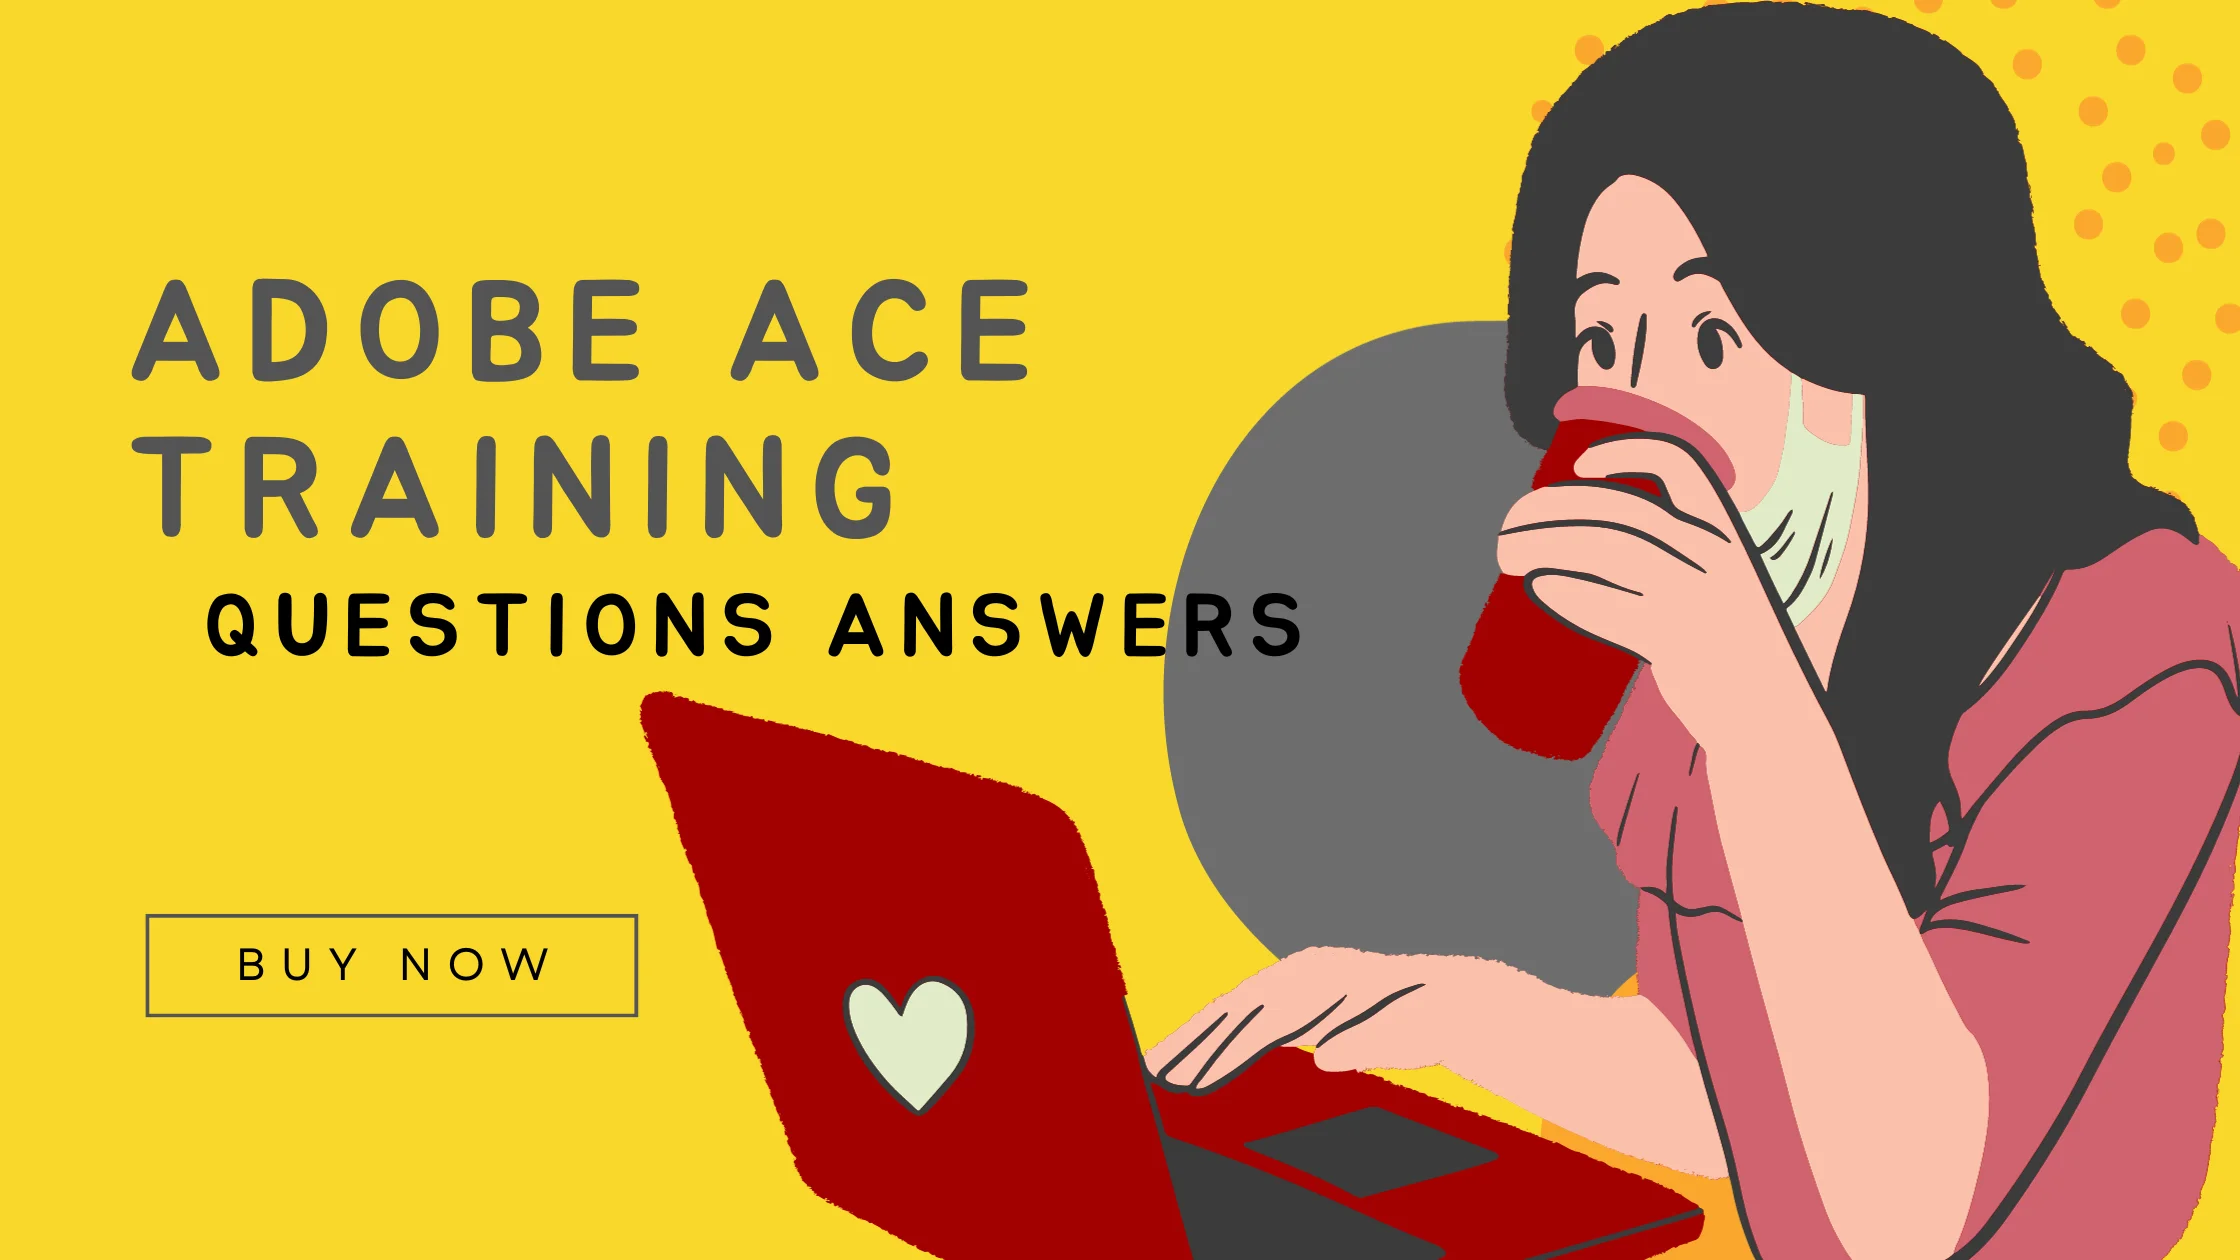 Adobe ACE Training promotion